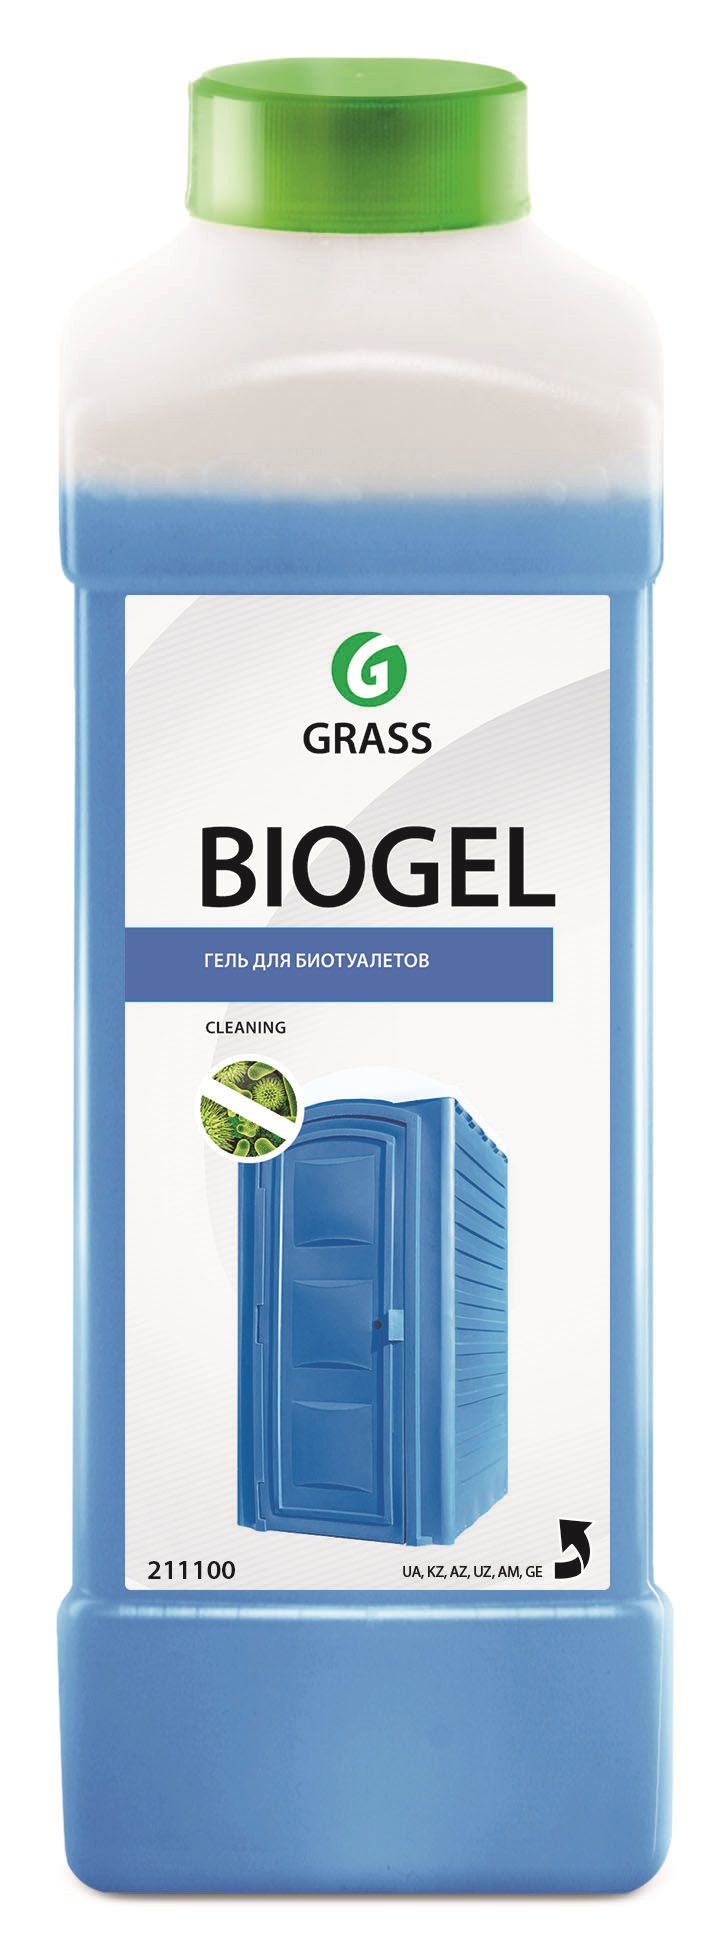   BIOGEL 1 ()       GraSS